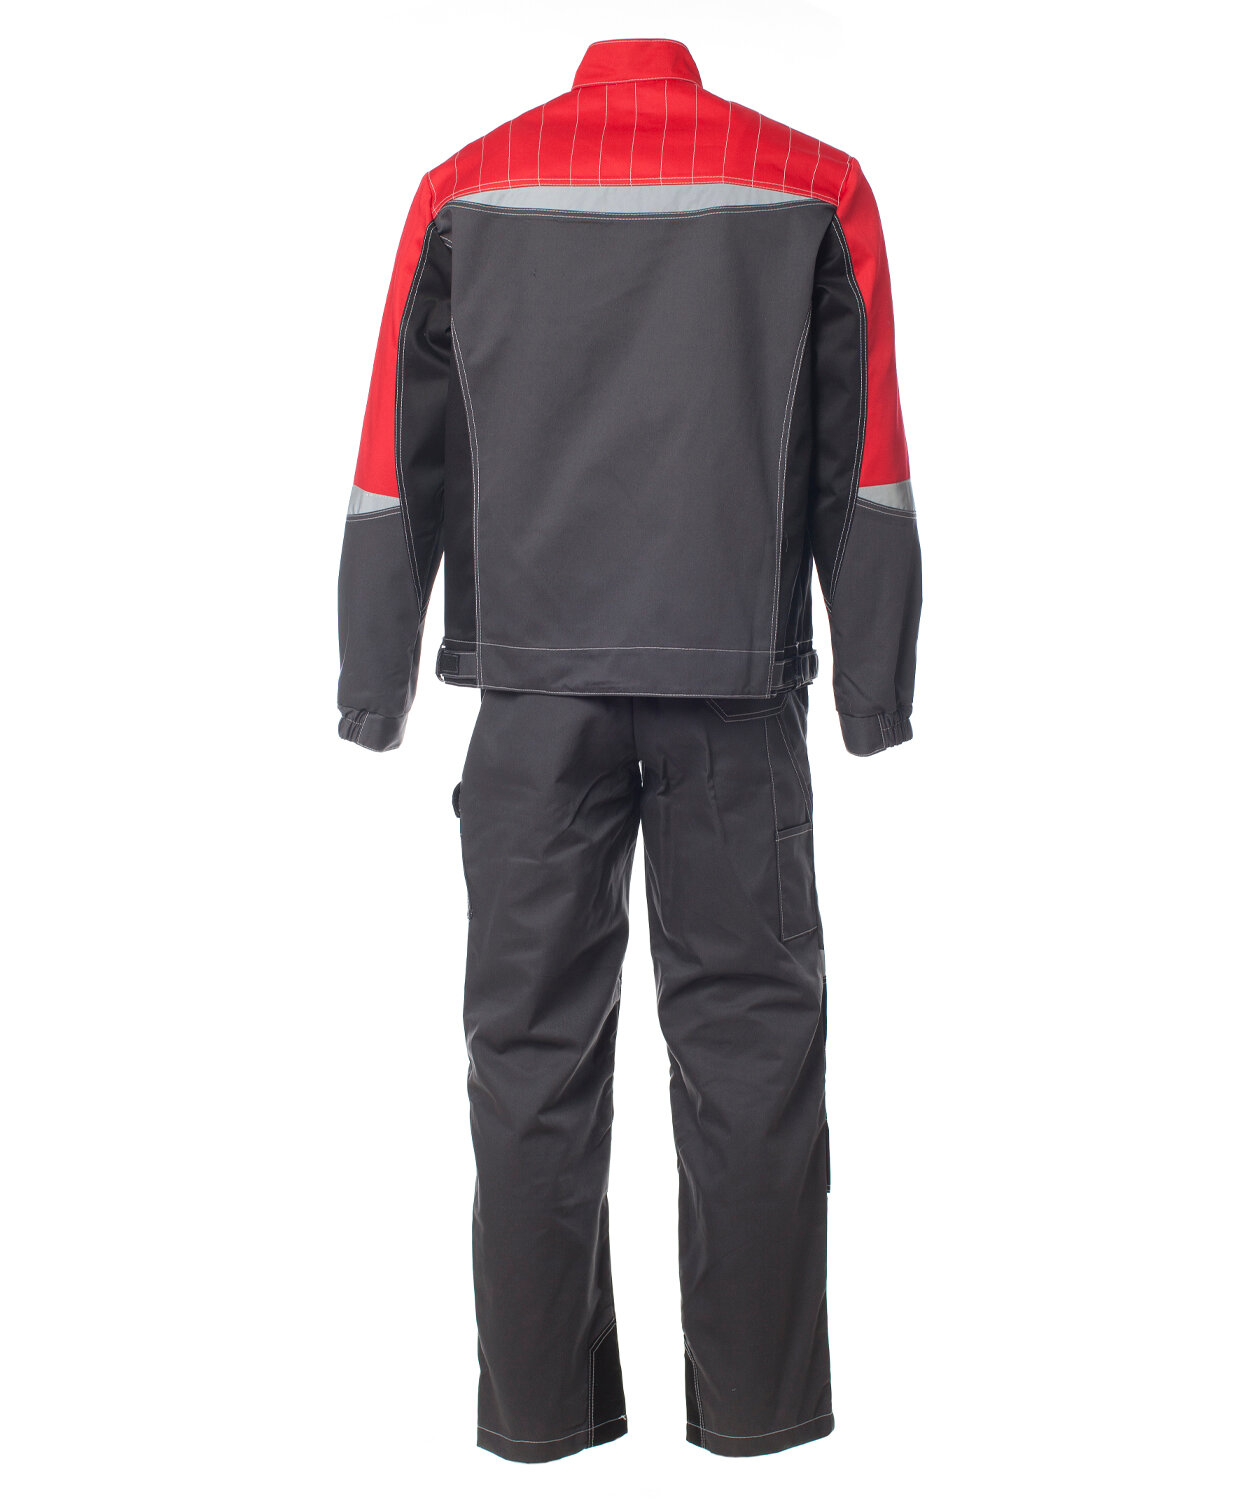 Костюм мужской «формула» куртка, полукомбинезон цвет: т. серый /красный/чёрный, Размер 44-46 (88-92) Рост 170-176